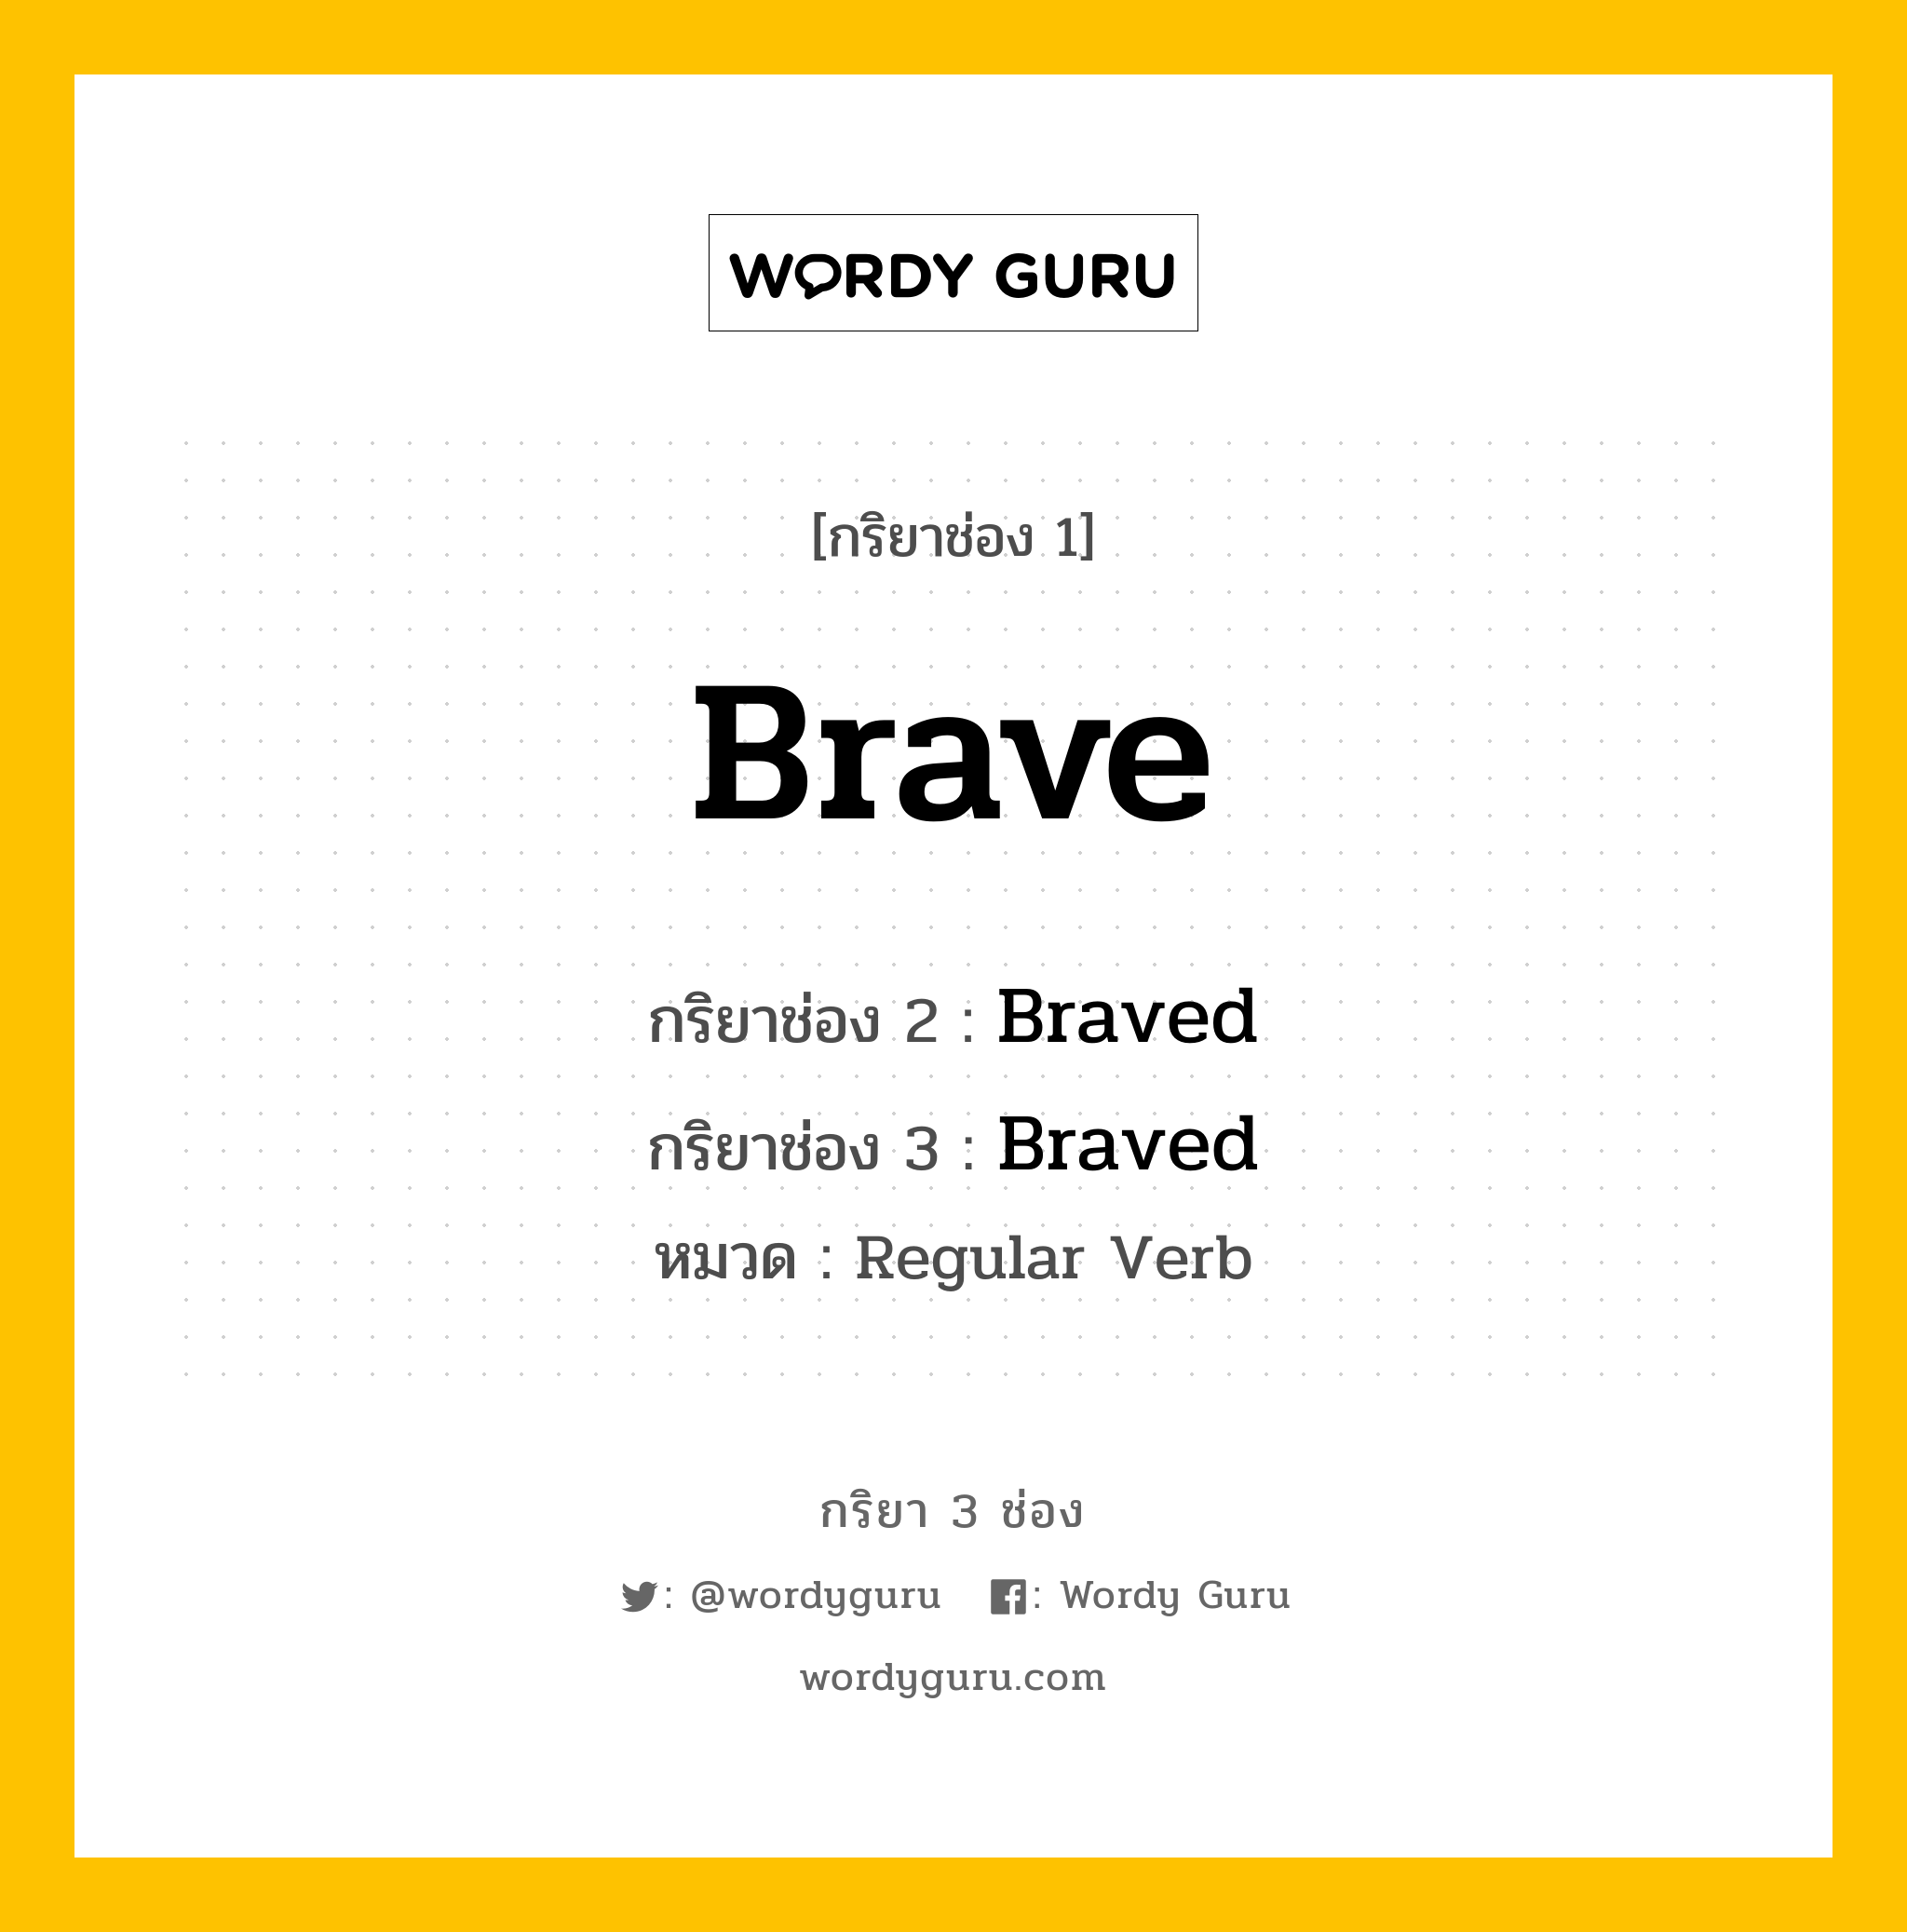 กริยา 3 ช่อง: Brave ช่อง 2 Brave ช่อง 3 คืออะไร, กริยาช่อง 1 Brave กริยาช่อง 2 Braved กริยาช่อง 3 Braved หมวด Regular Verb หมวด Regular Verb